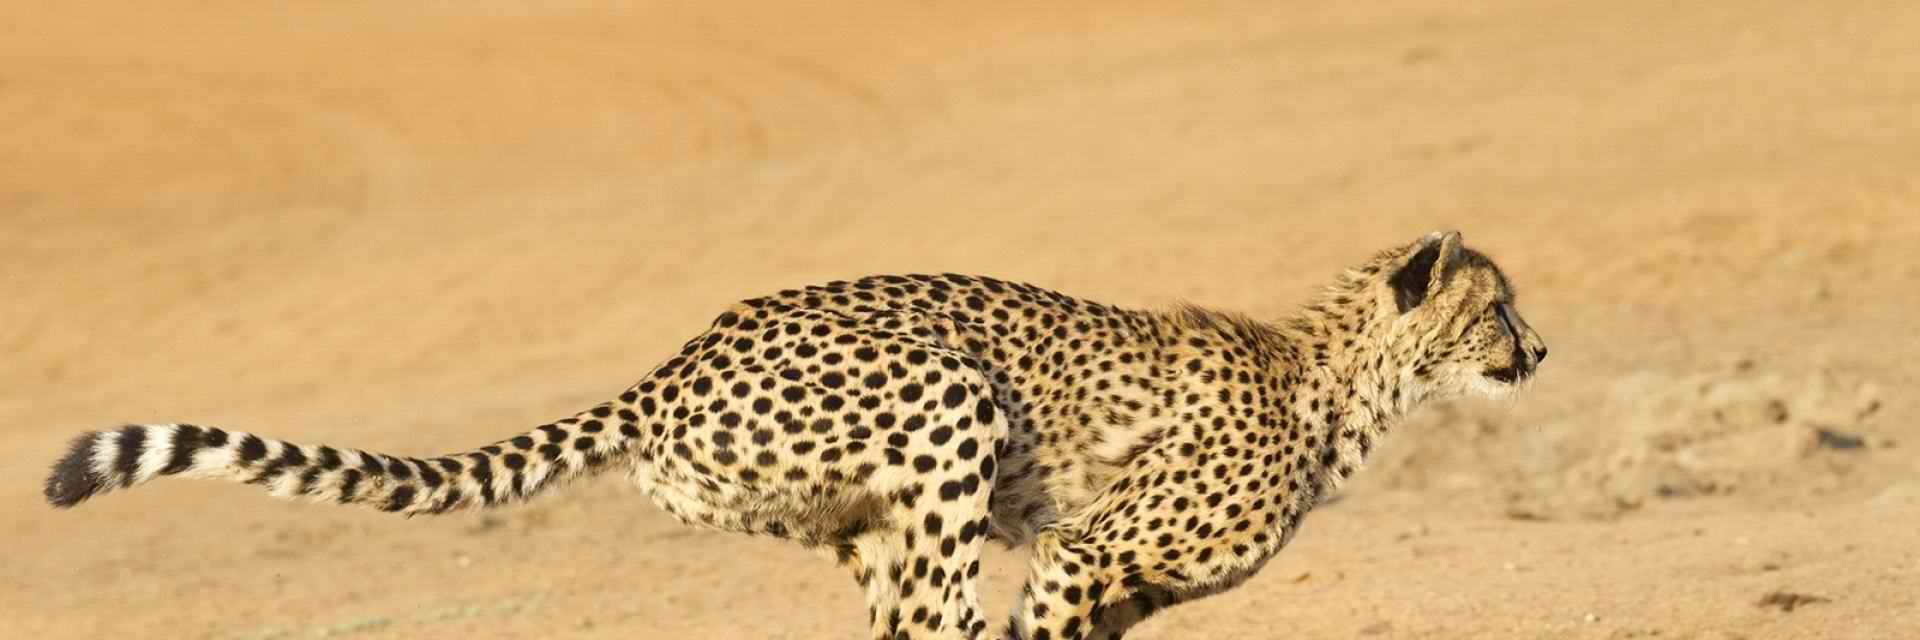 Sprint-training for Cheetah